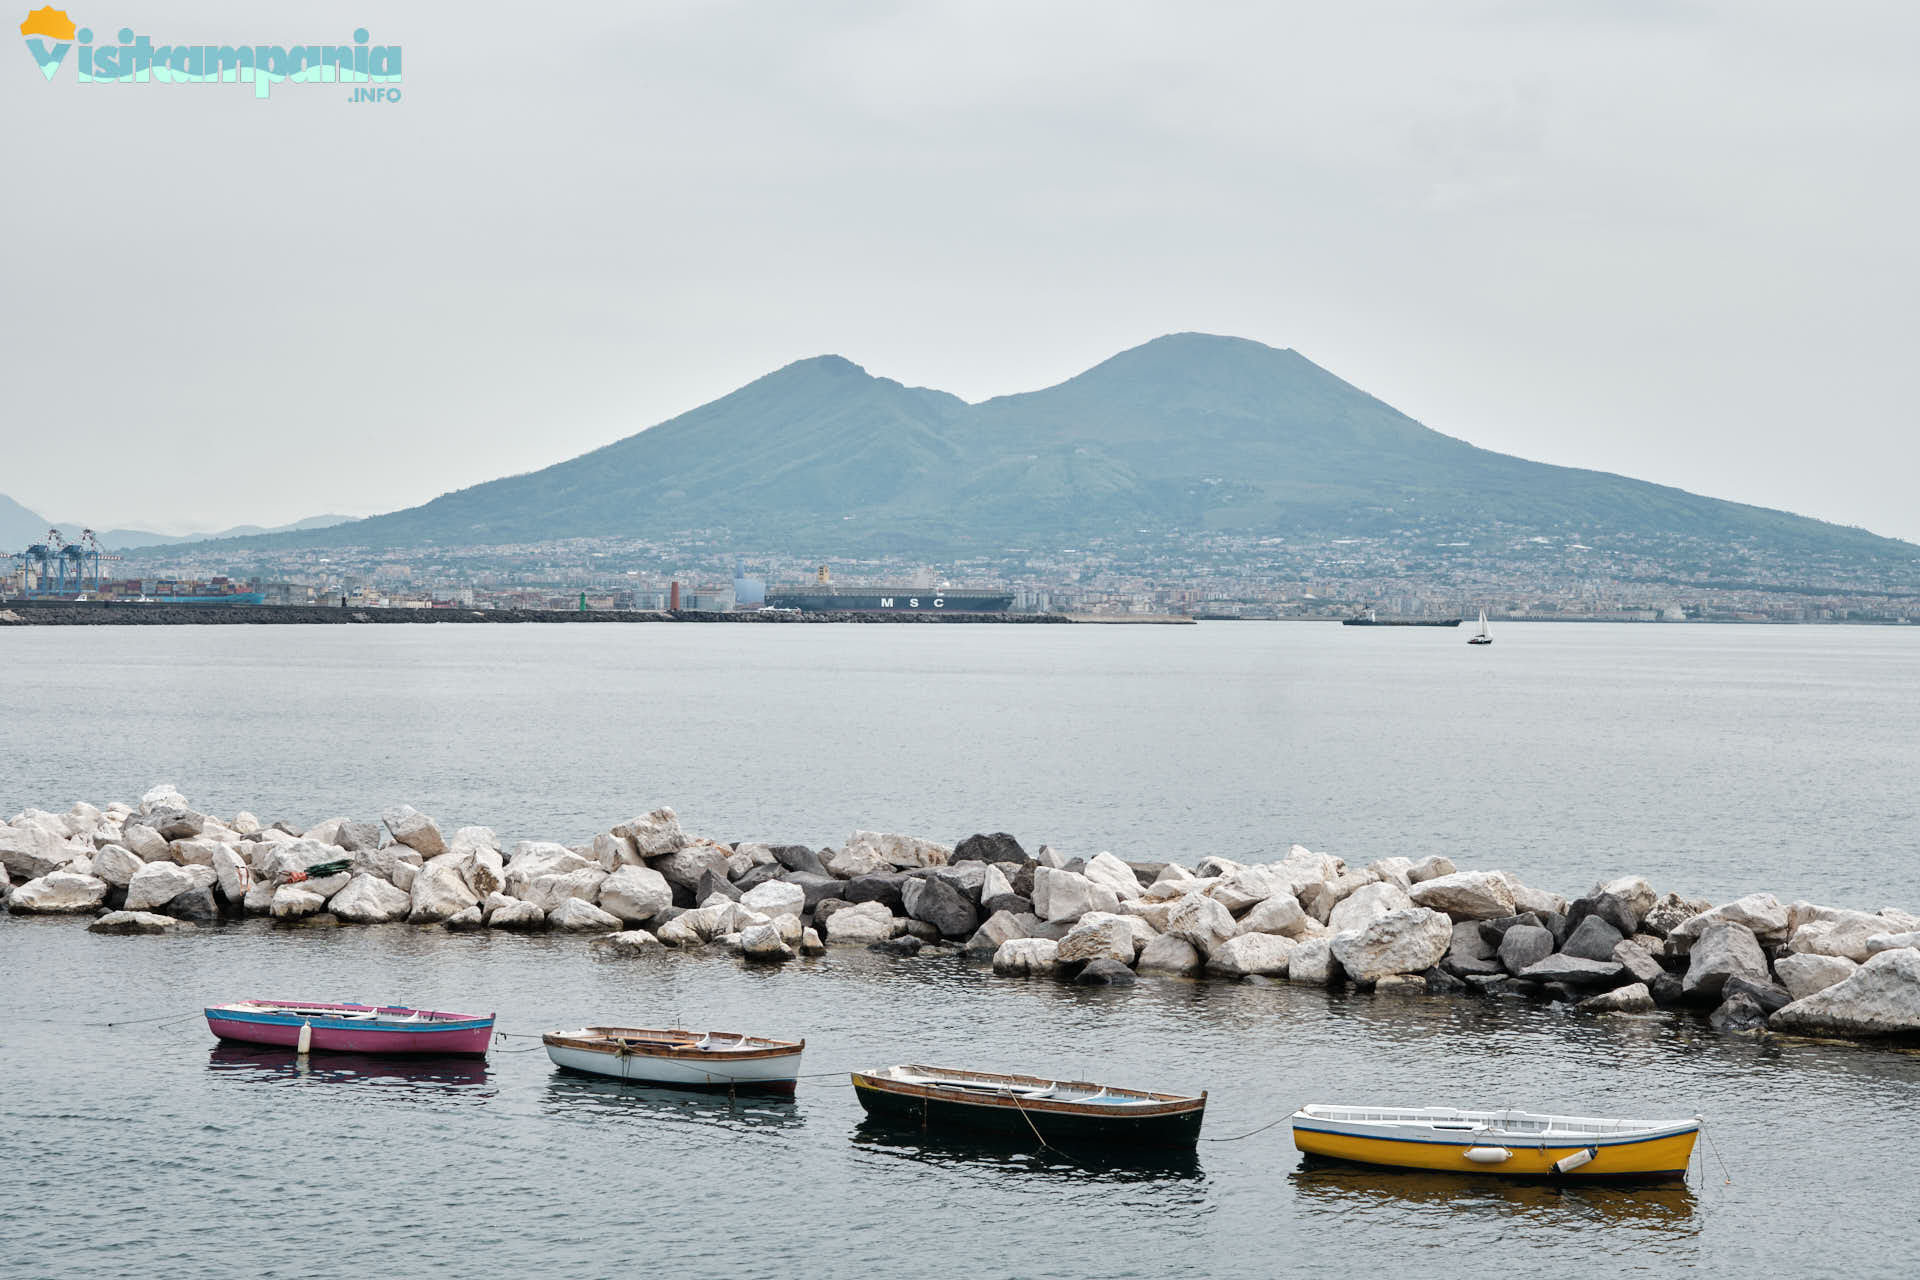 Naples essential, waterfront and Vesuvius